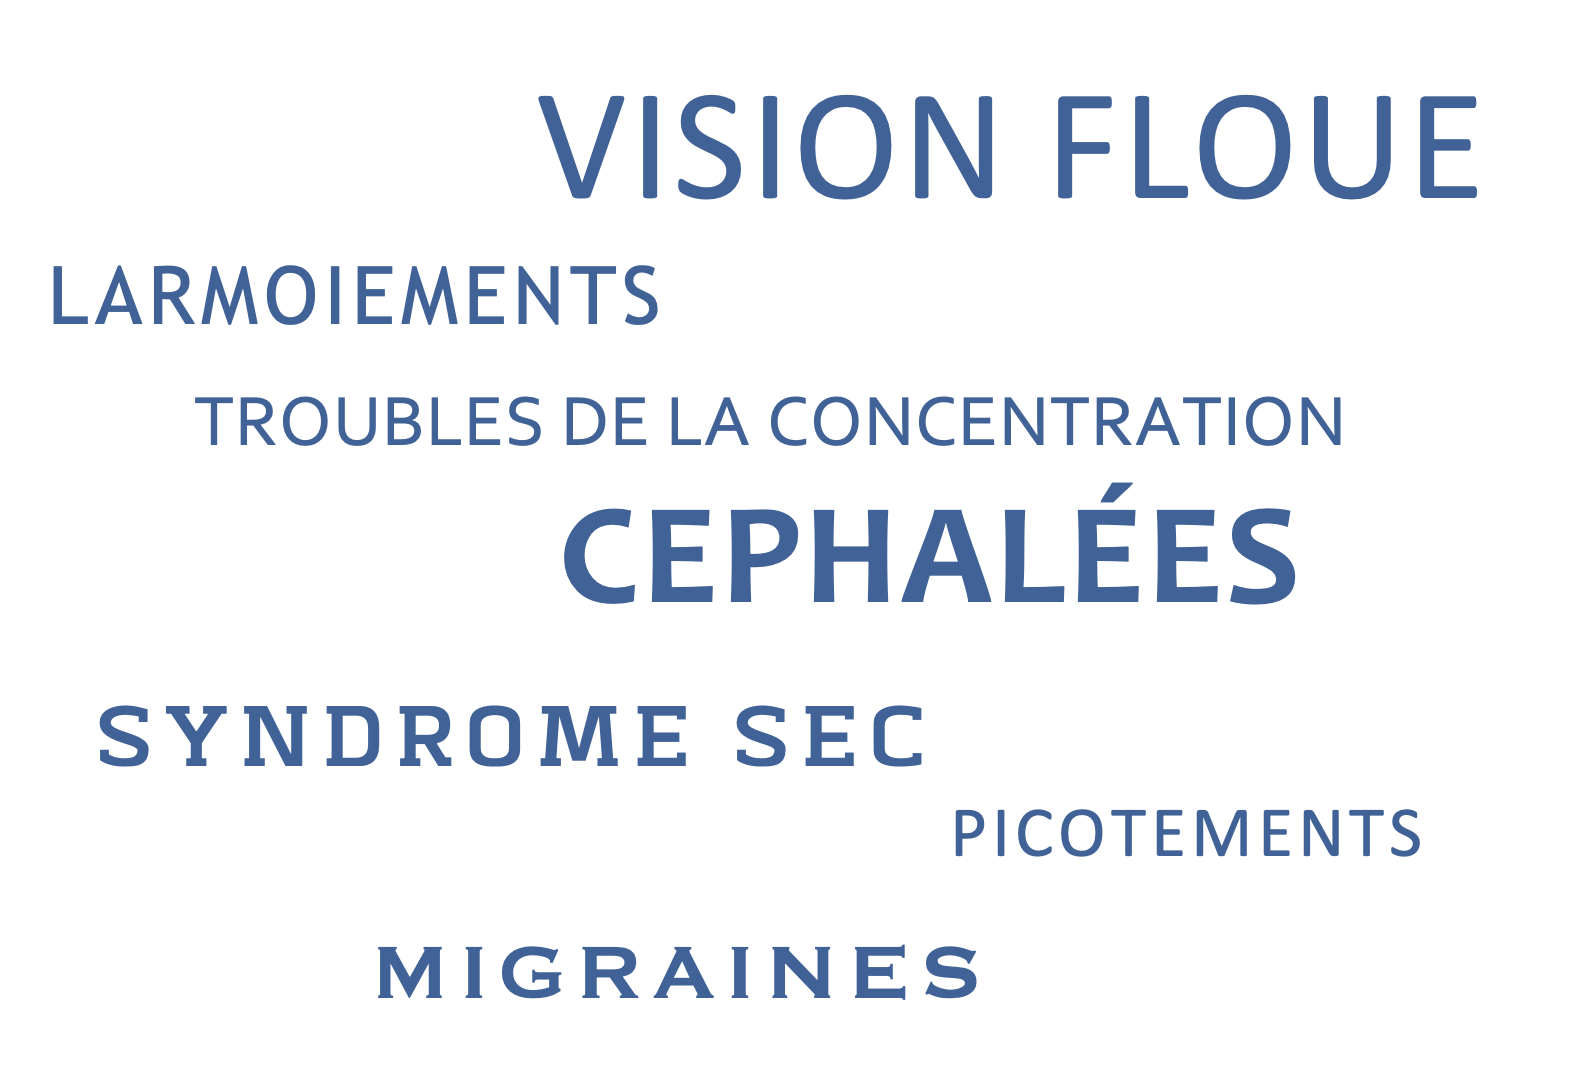 La fatigue visuelle digitale inclut des symptômes comme la vision floue, les yeux secs, les maux de tête, les troubles de la concentration, les douleurs oculaires, les picotements.